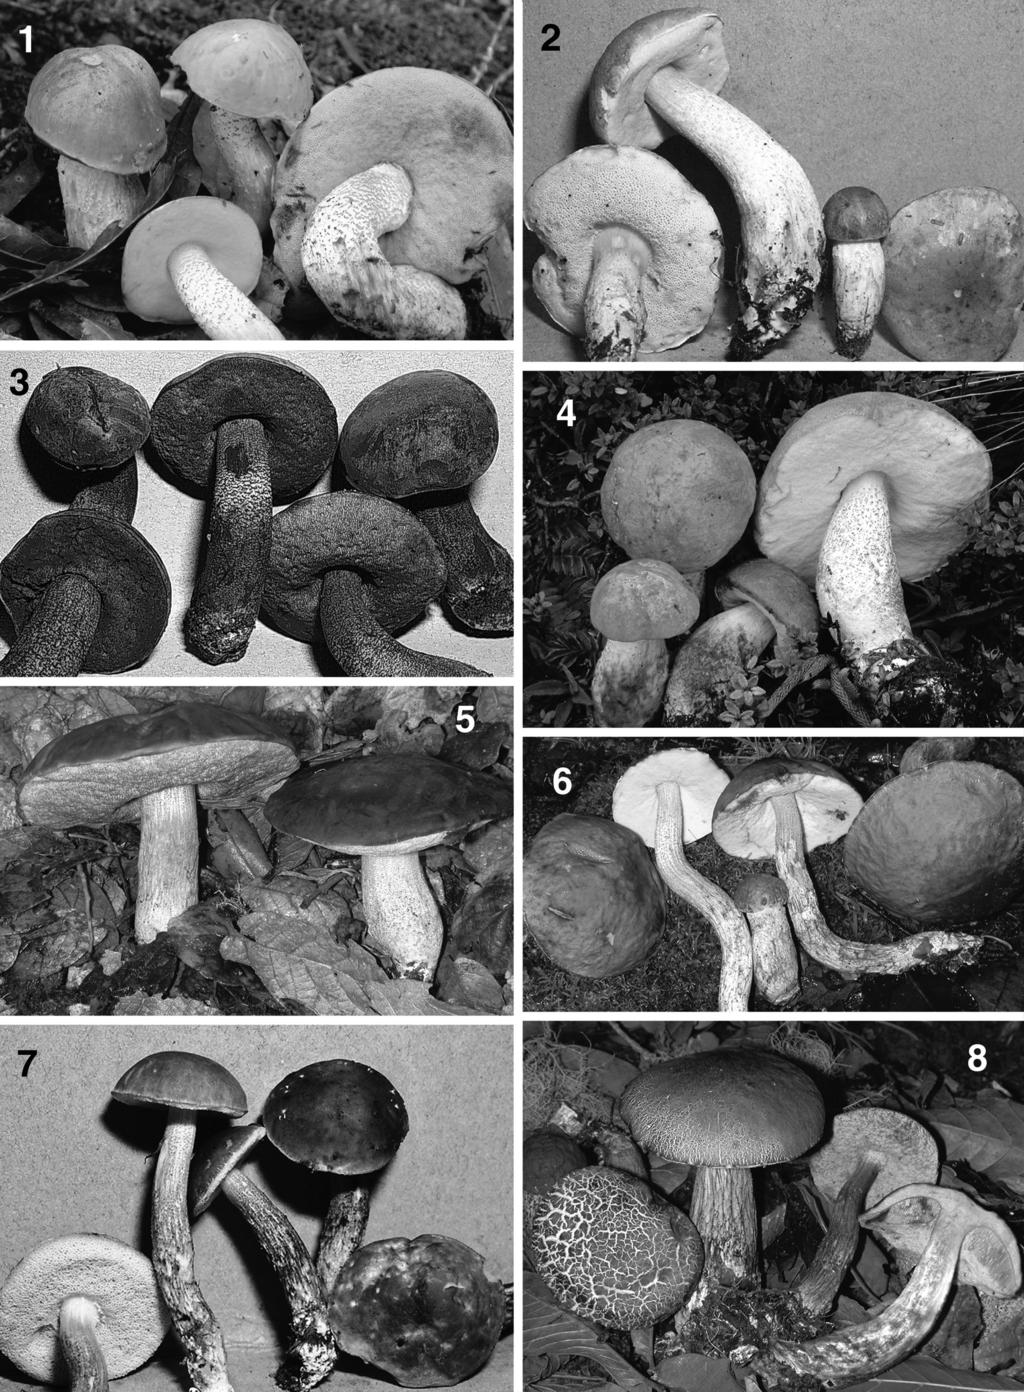 490 MYCOLOGIA FIGS. 1 8. Habits of Costa Rican Leccinum species. 1. L. andinum (Halling 8200). 2. L. cartagoense (Halling 7394). 3. L. eximium (Halling 7798). 4. L. monticola (Halling 8288). 5.